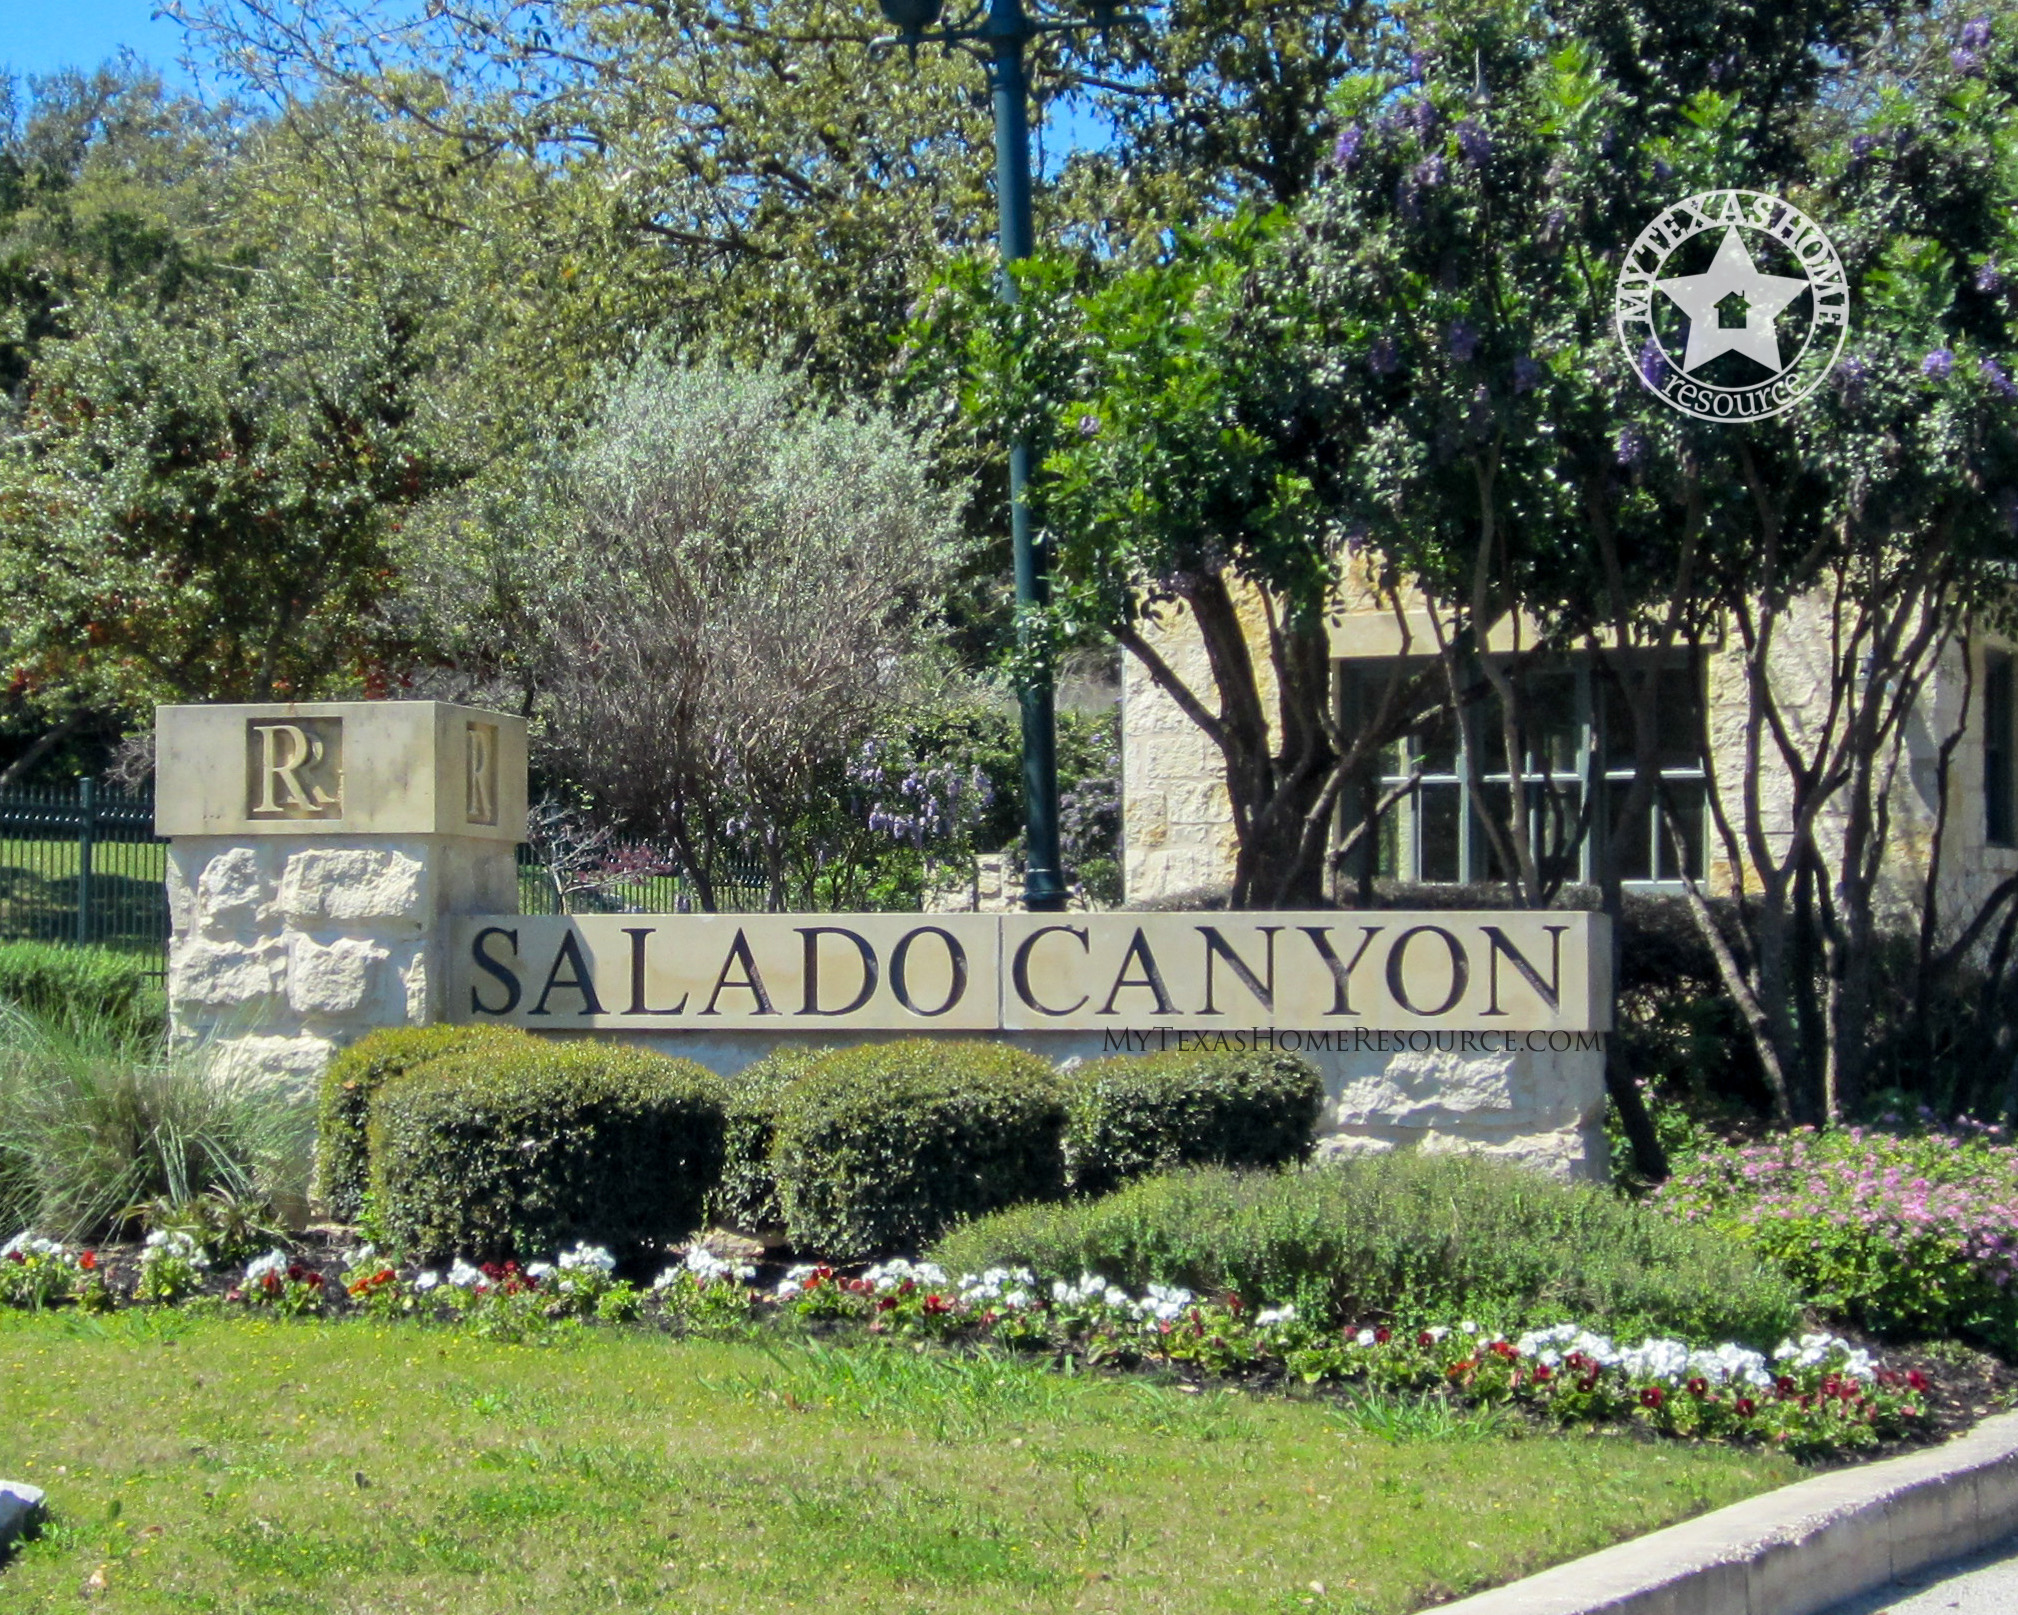 Salado Canyon Rogers Ranch Community San Antonio, TX